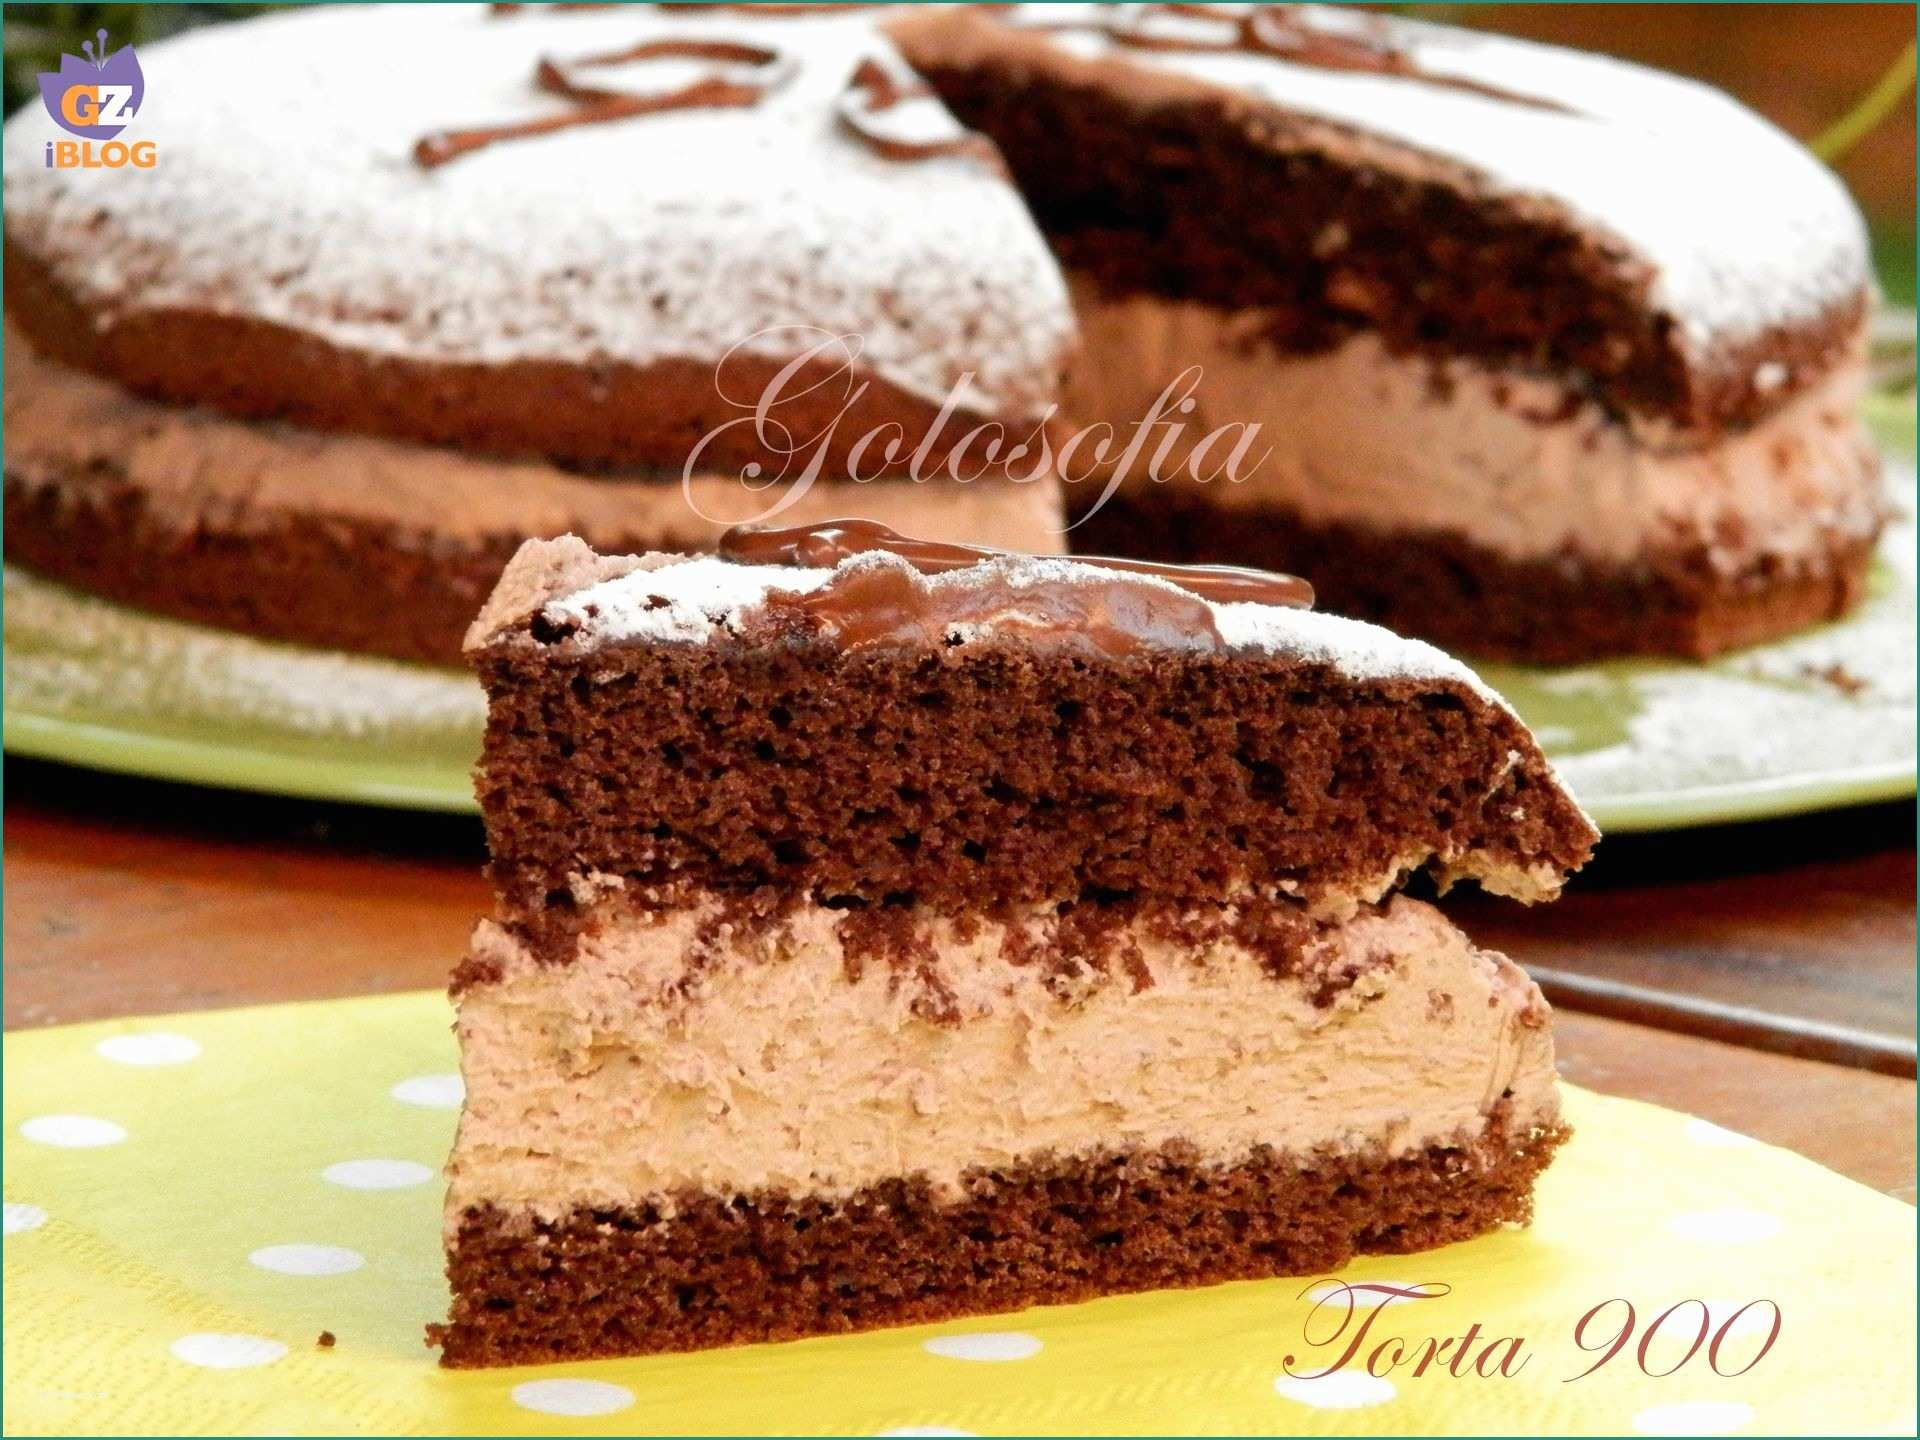 Cheesecake Nutella Bimby E torta 900 Ricetta Fantastica Recipes to Cook Pinterest